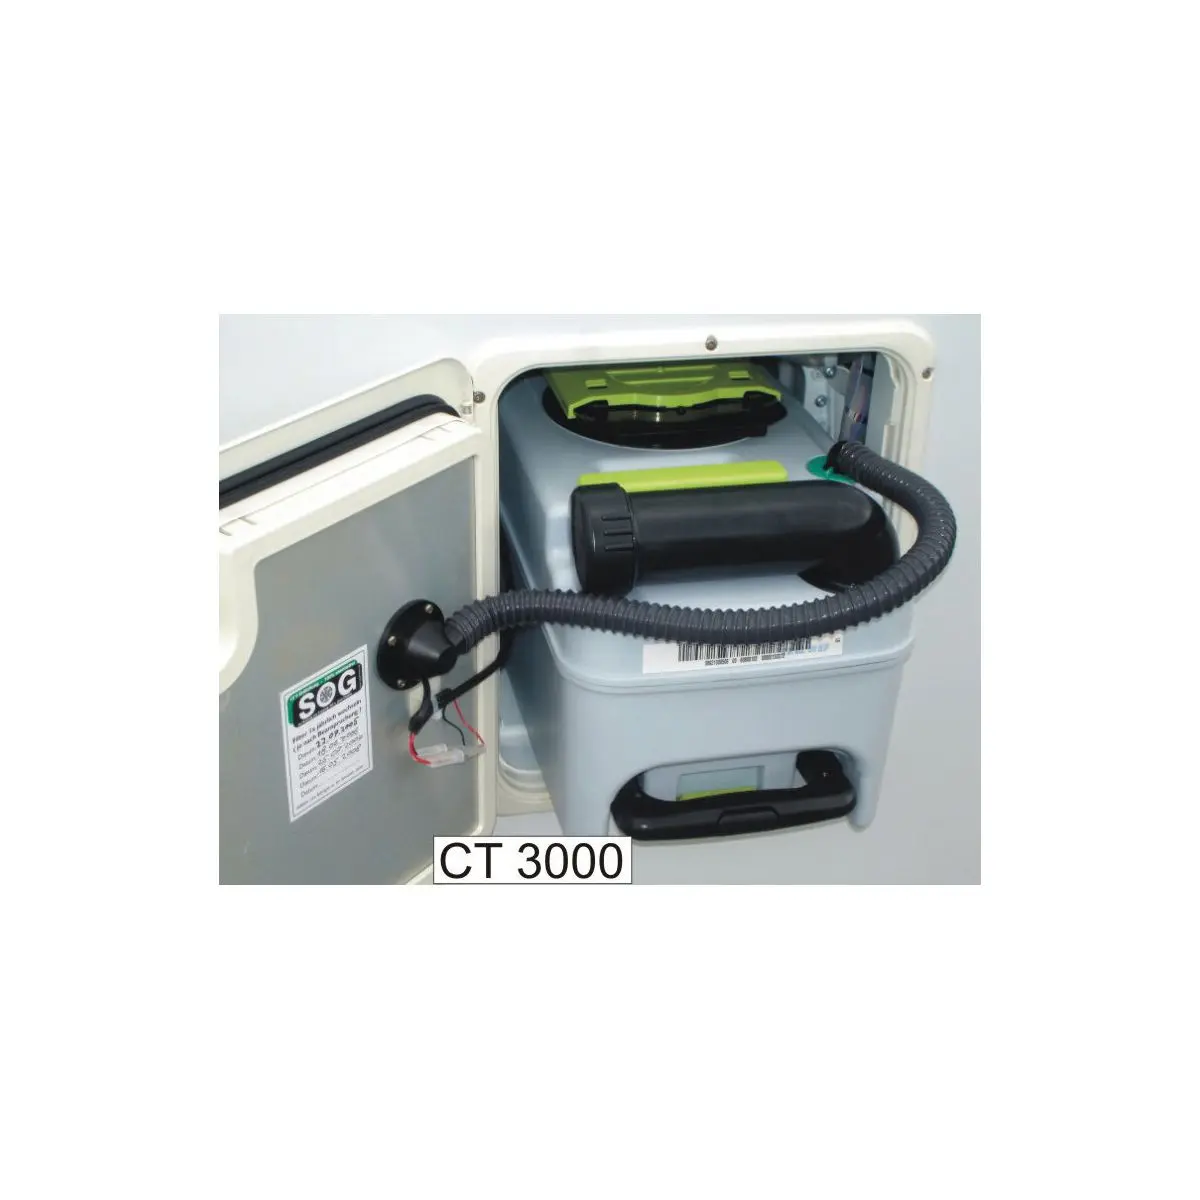 WC ventilátor SOG - typ 3000A pre CT3000/CT4000, biely